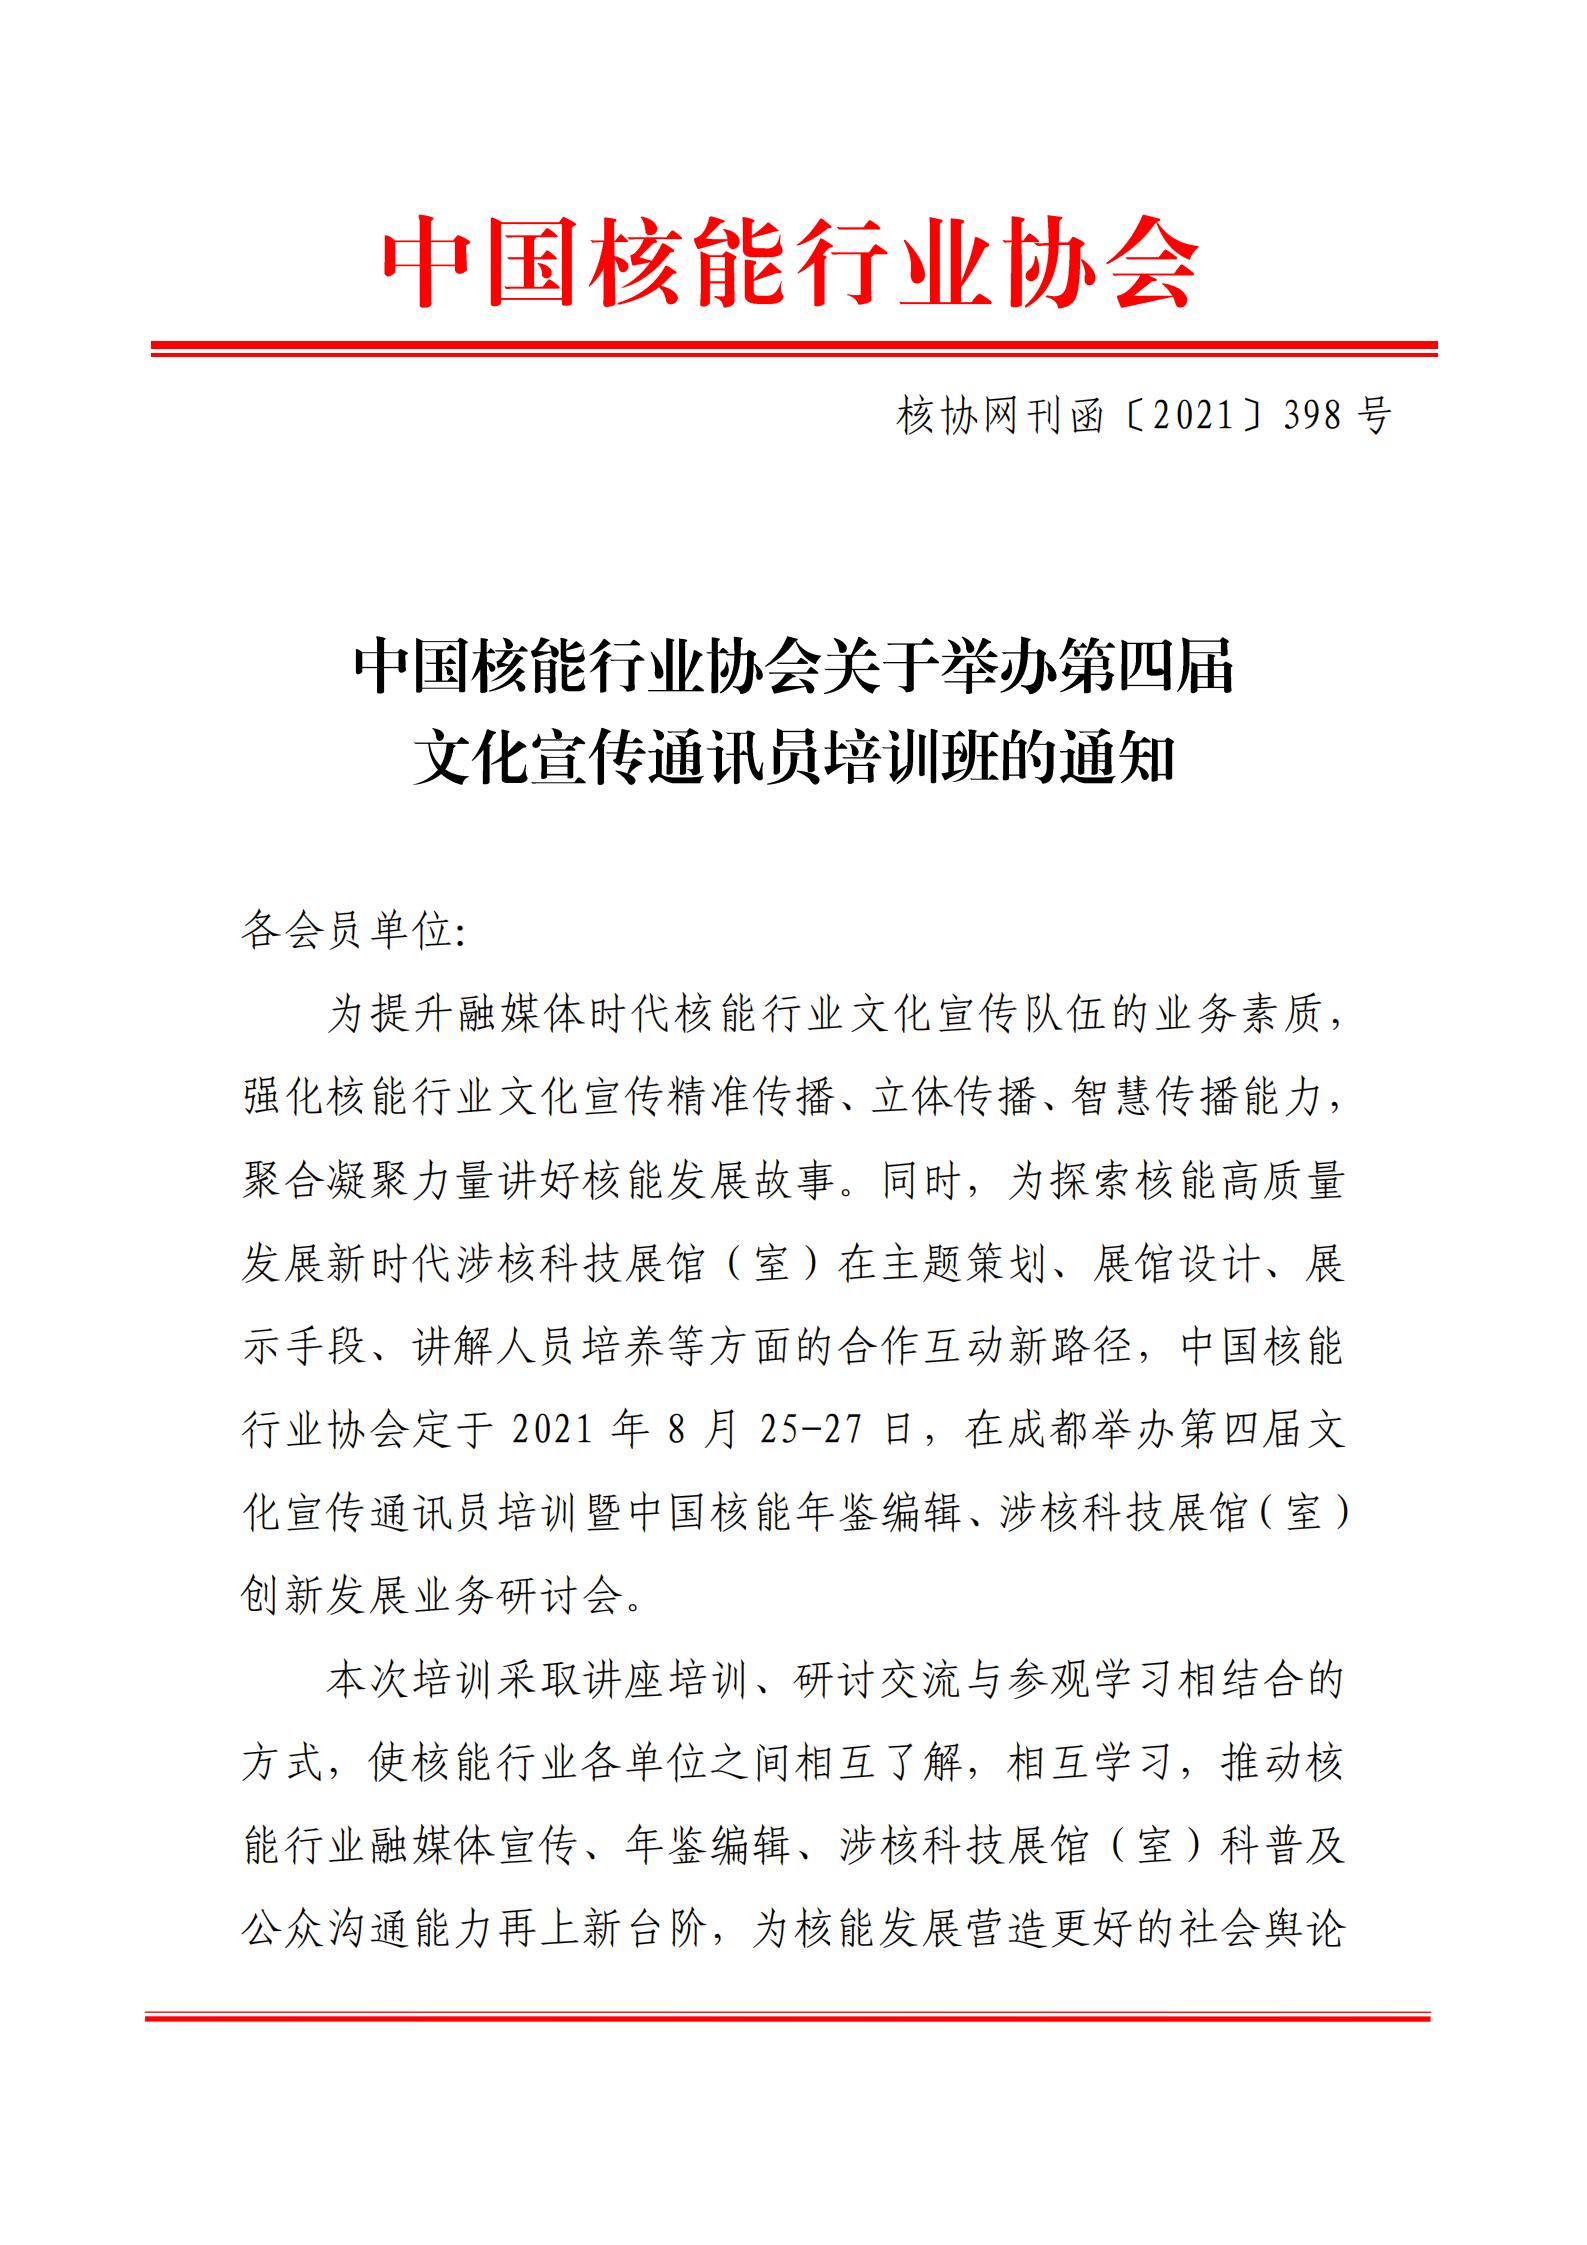 中国核能行业协会关于举办第四届文化宣传通讯员培训班的通知_00.jpg